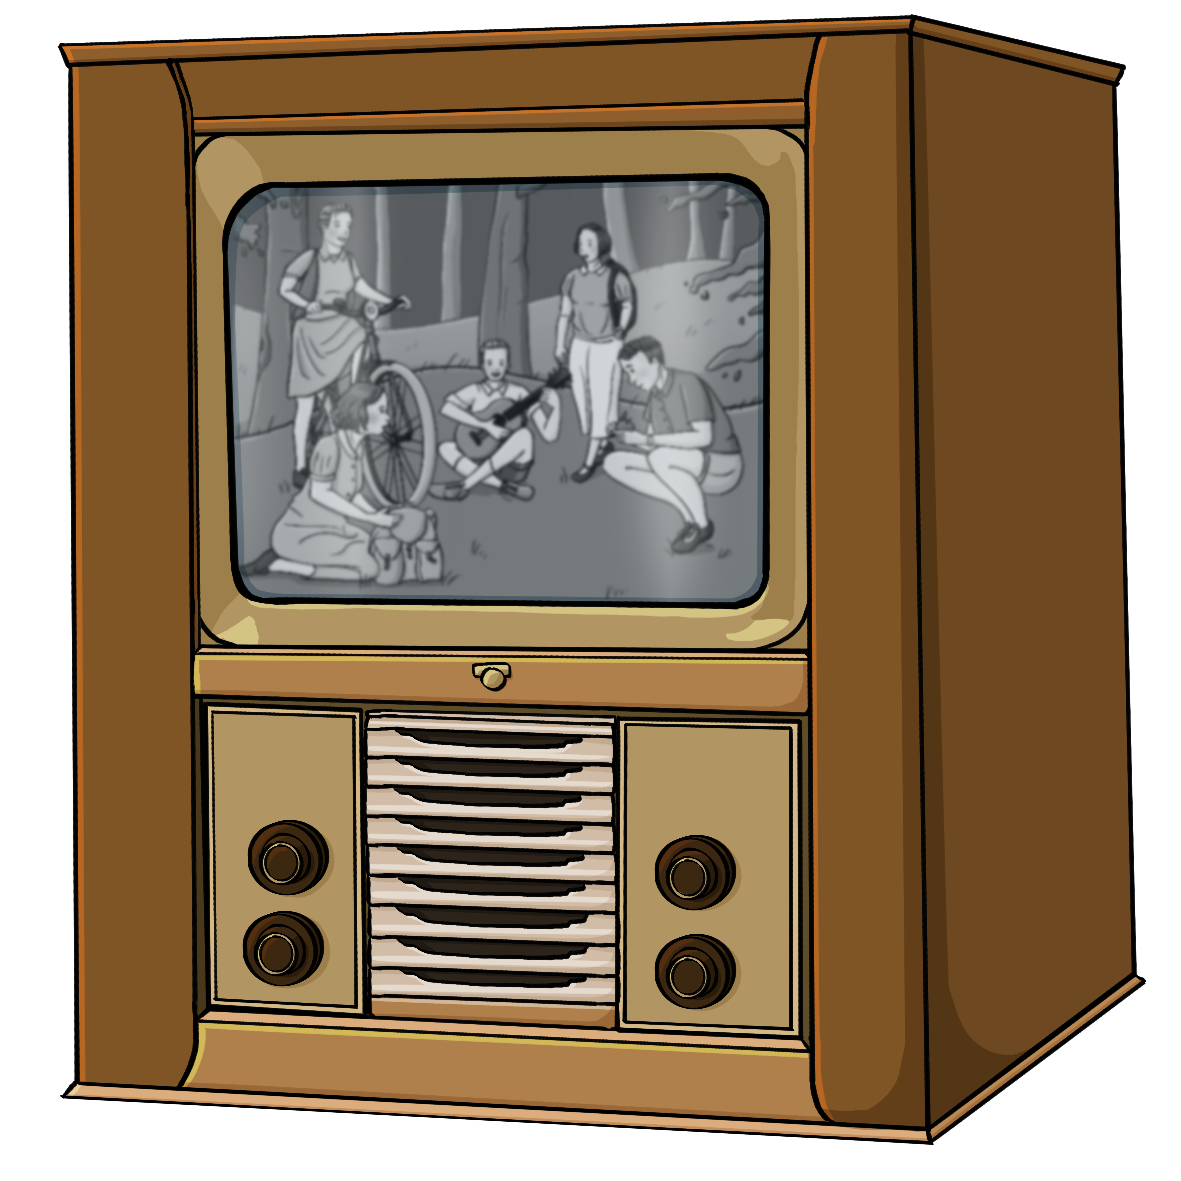 Ein alter Schwarzweißfernseher mit einem Holzgehäuse und großen Knöpfen. Auf dem Bildschirm ist eine Gruppe Jugendliche im Wald.